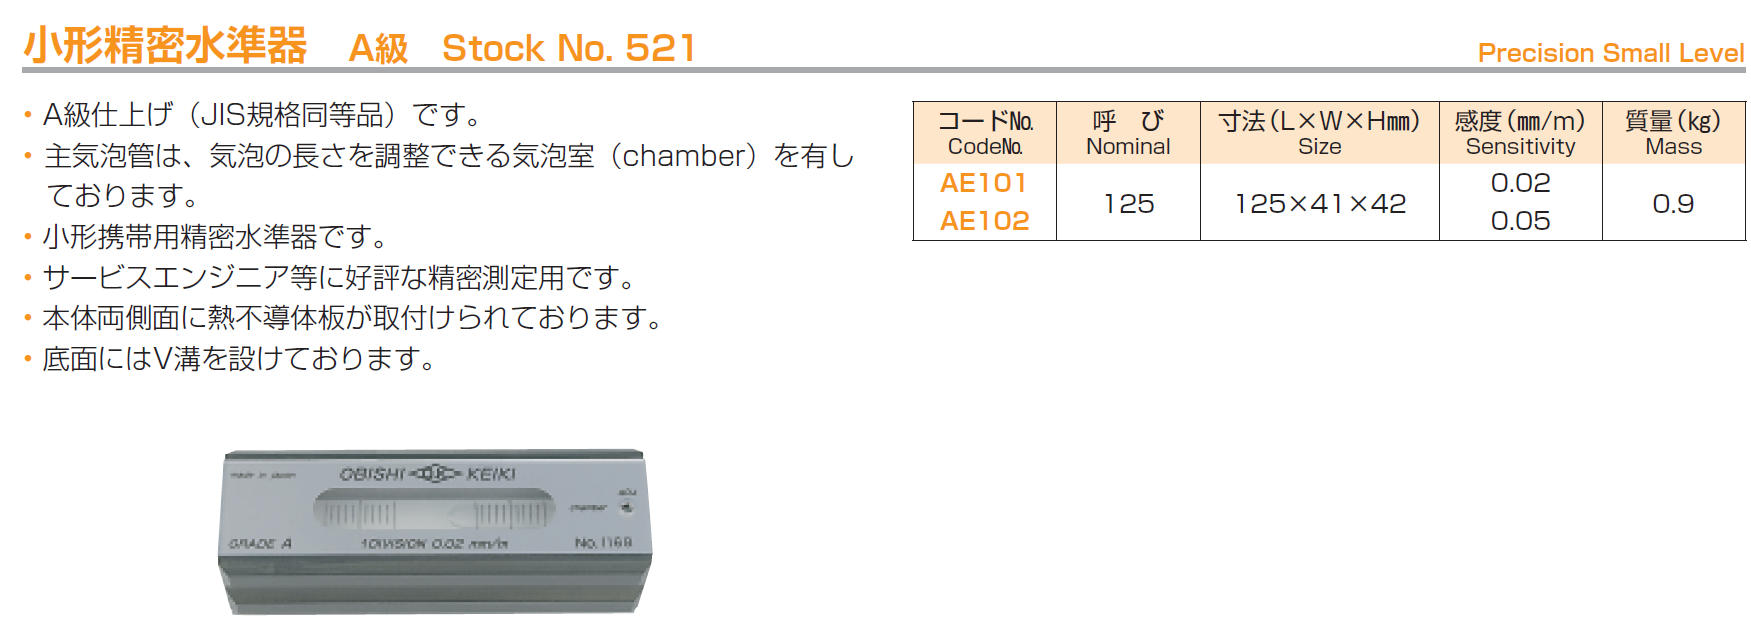 クリアランス売上 大菱計器製作所 大菱計器 AE101 小形精密水準器 Ａ級